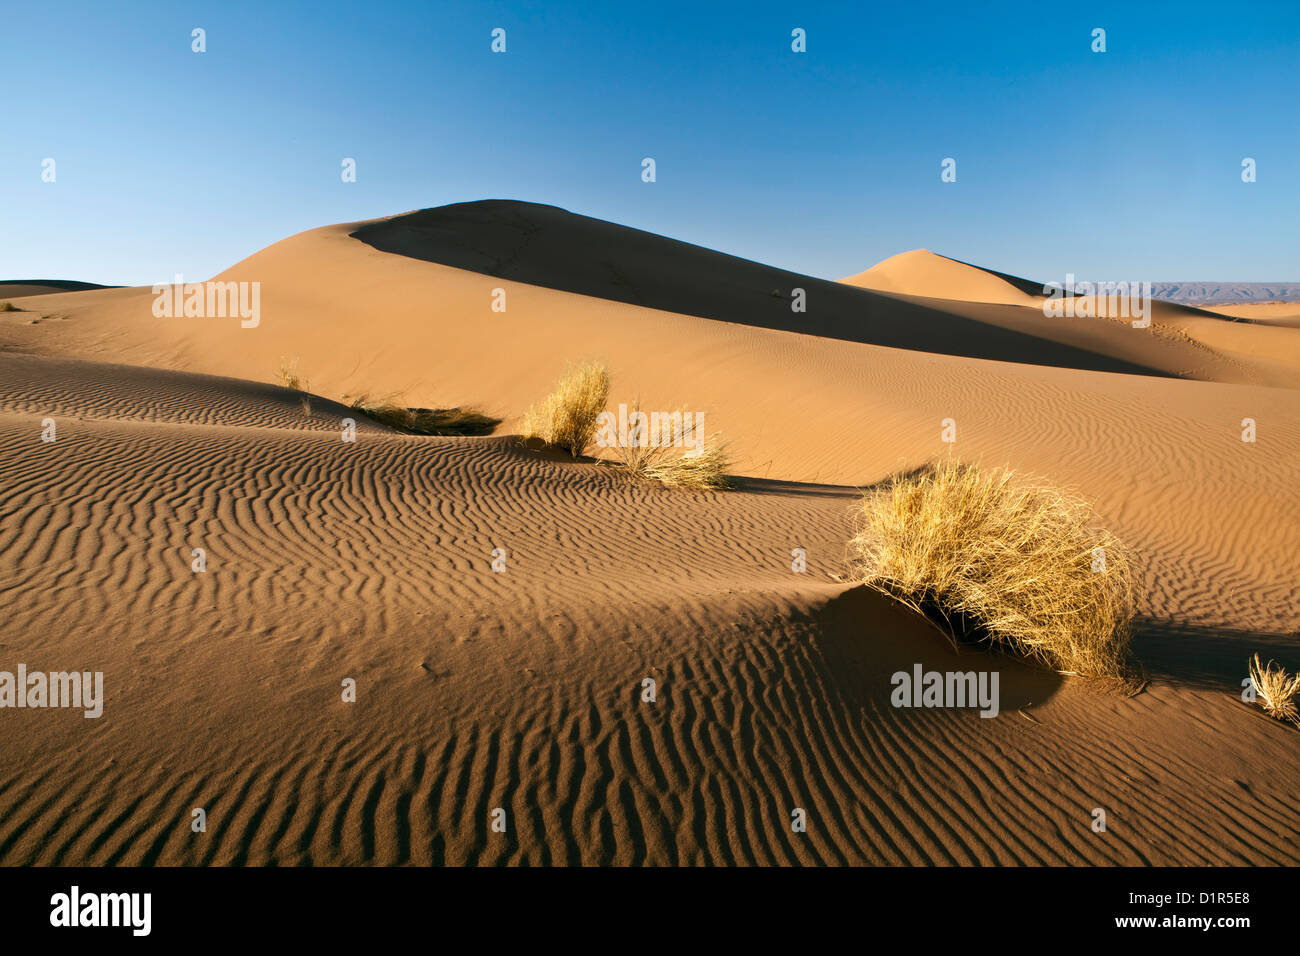 Marruecos, M'Hamid, Erg Chigaga dunas de arena. El desierto del Sahara. Campamento turístico, vivaque. Foto de stock